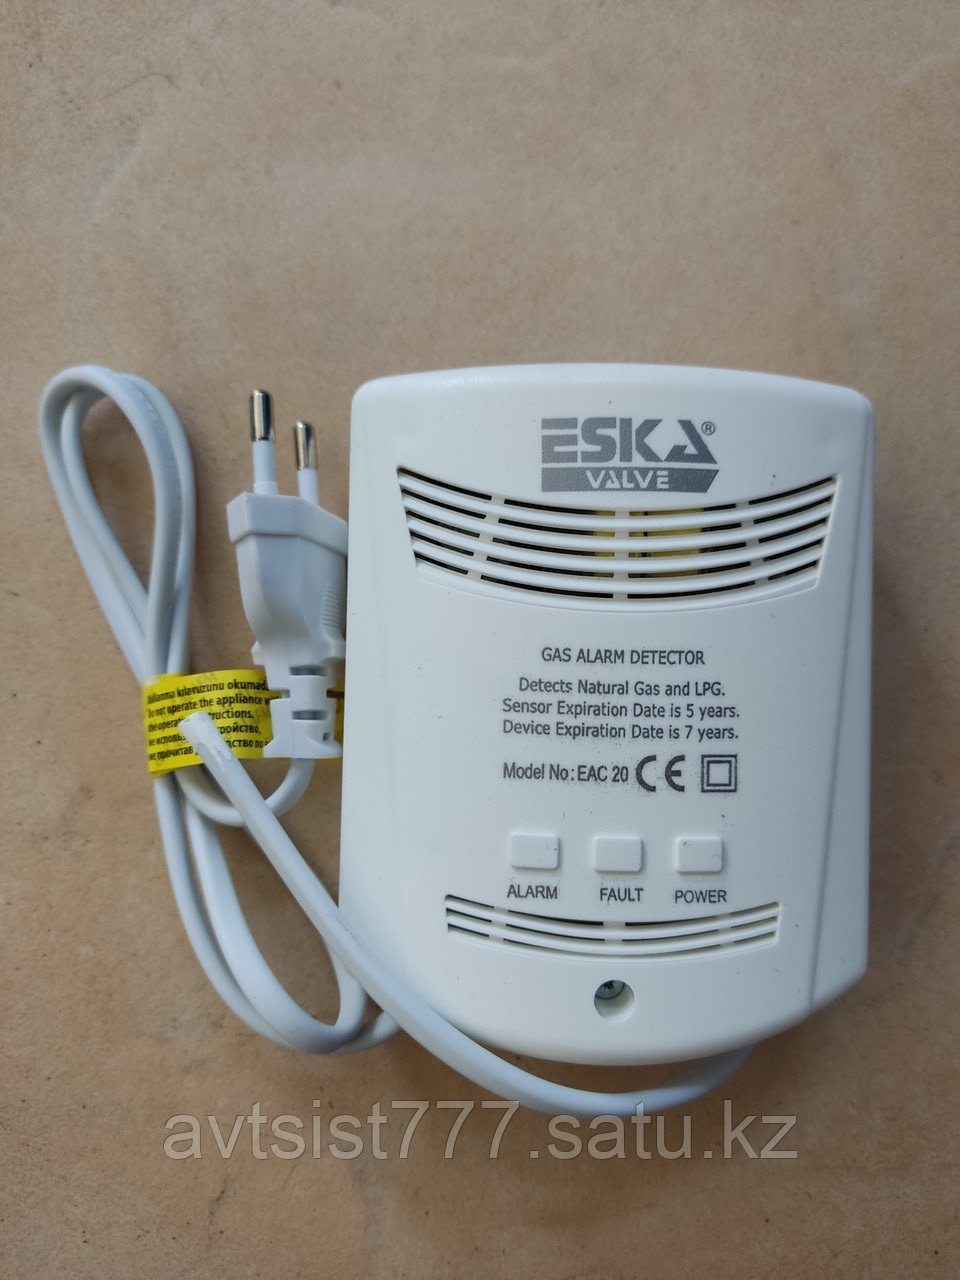 Сигнализатор газа бытовой DN15 ESKA (Турция)